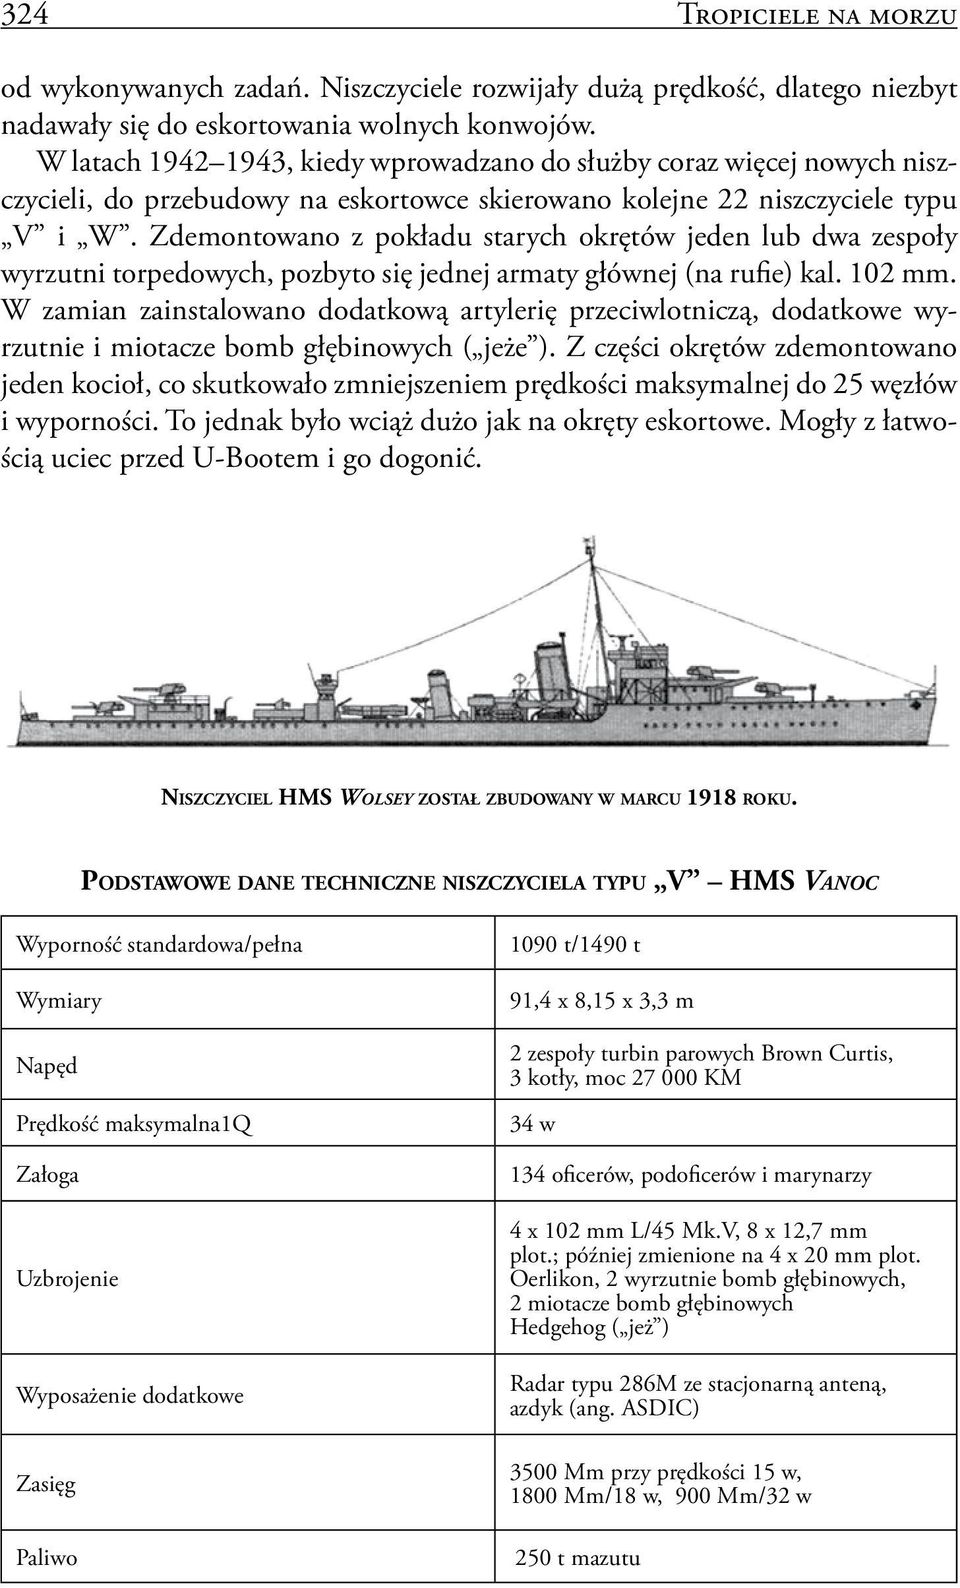 Zdemontowano z pokładu starych okrętów jeden lub dwa zespoły wyrzutni torpedowych, pozbyto się jednej armaty głównej (na rufie) kal. 102 mm.